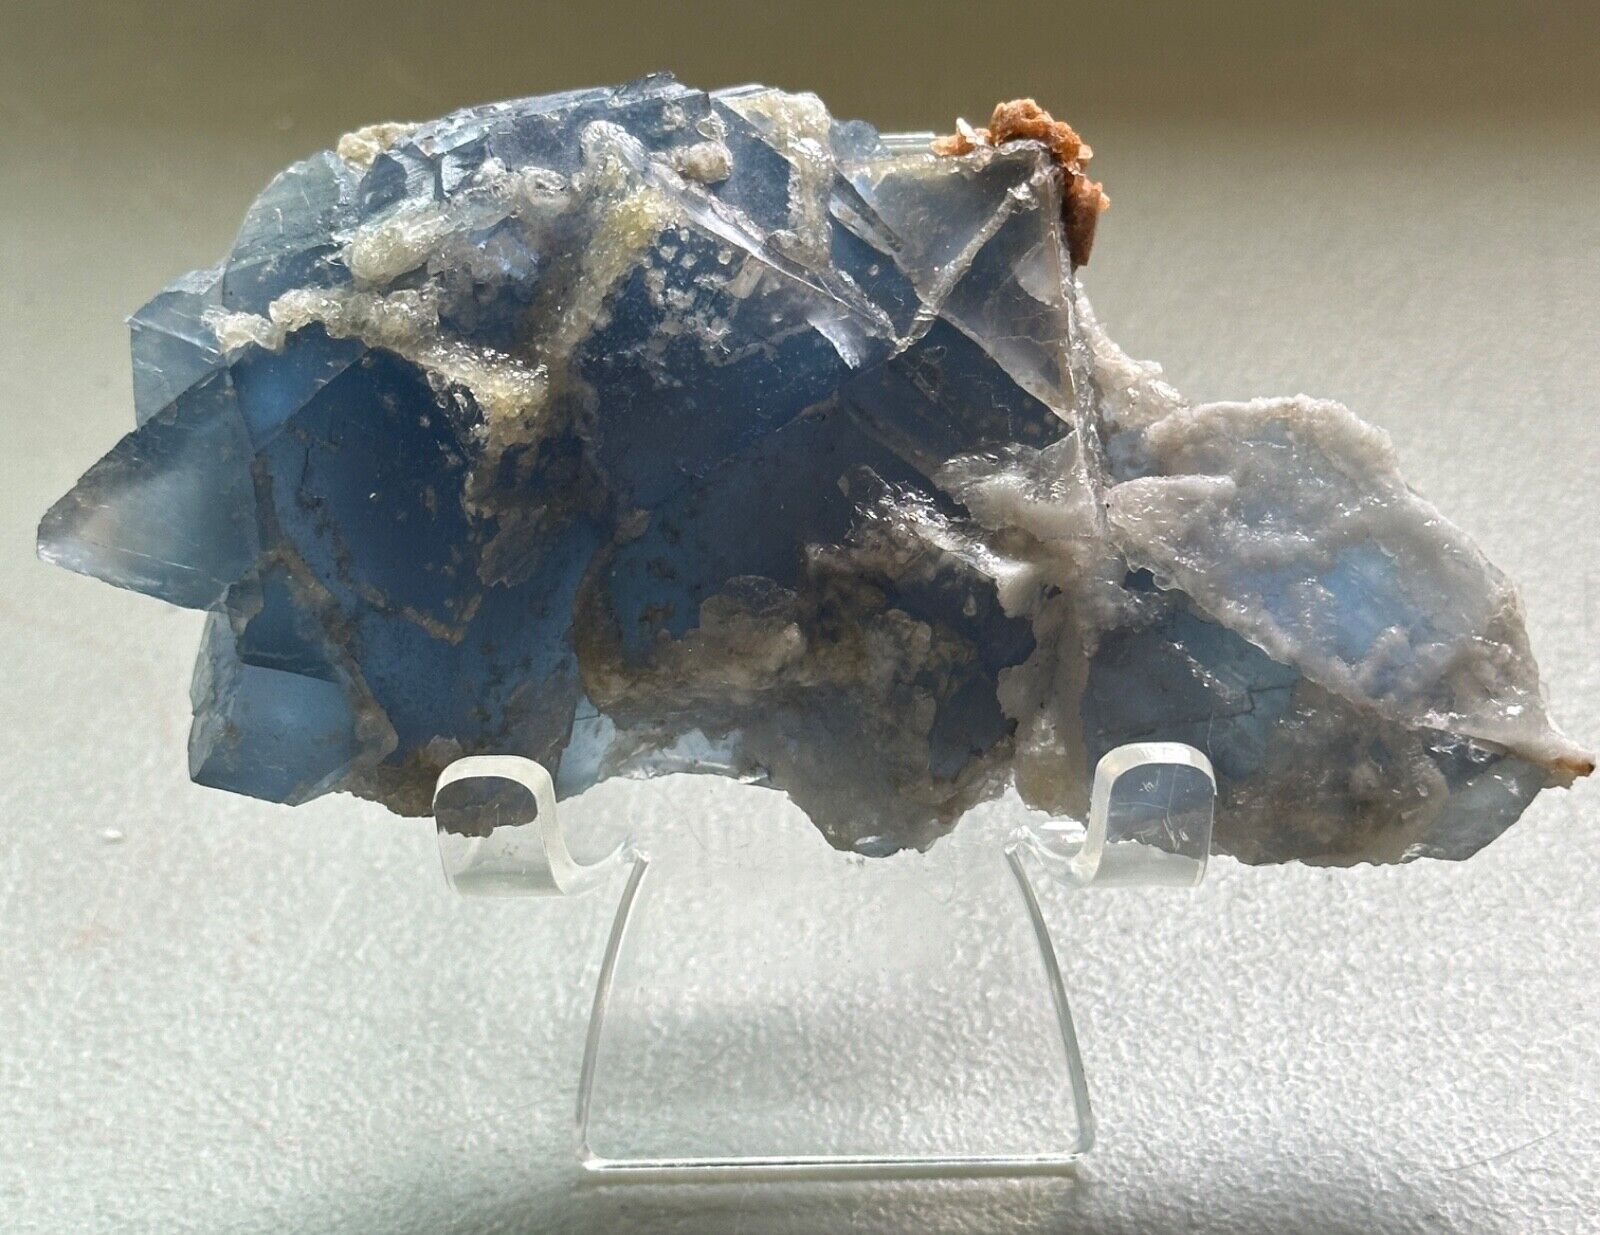 Blue Cubic Sugar Fluorite,Calcite,Quartz Crystal,Metaphysical,Specimen,Unique